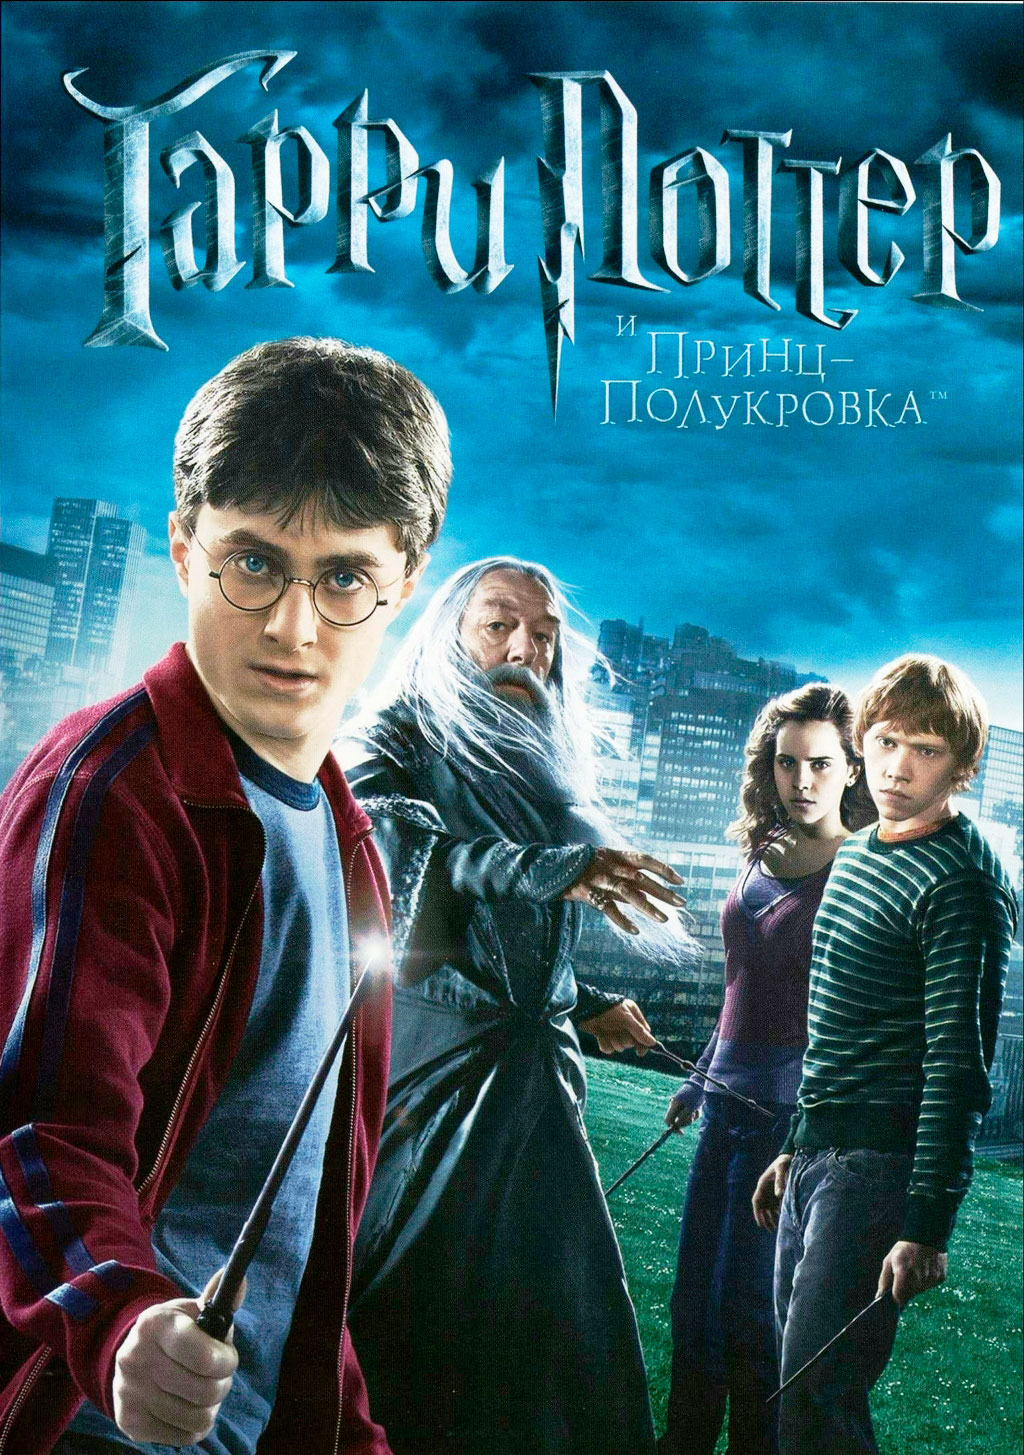 Гарри Поттер и Принц-Полукровка (региональное издание)